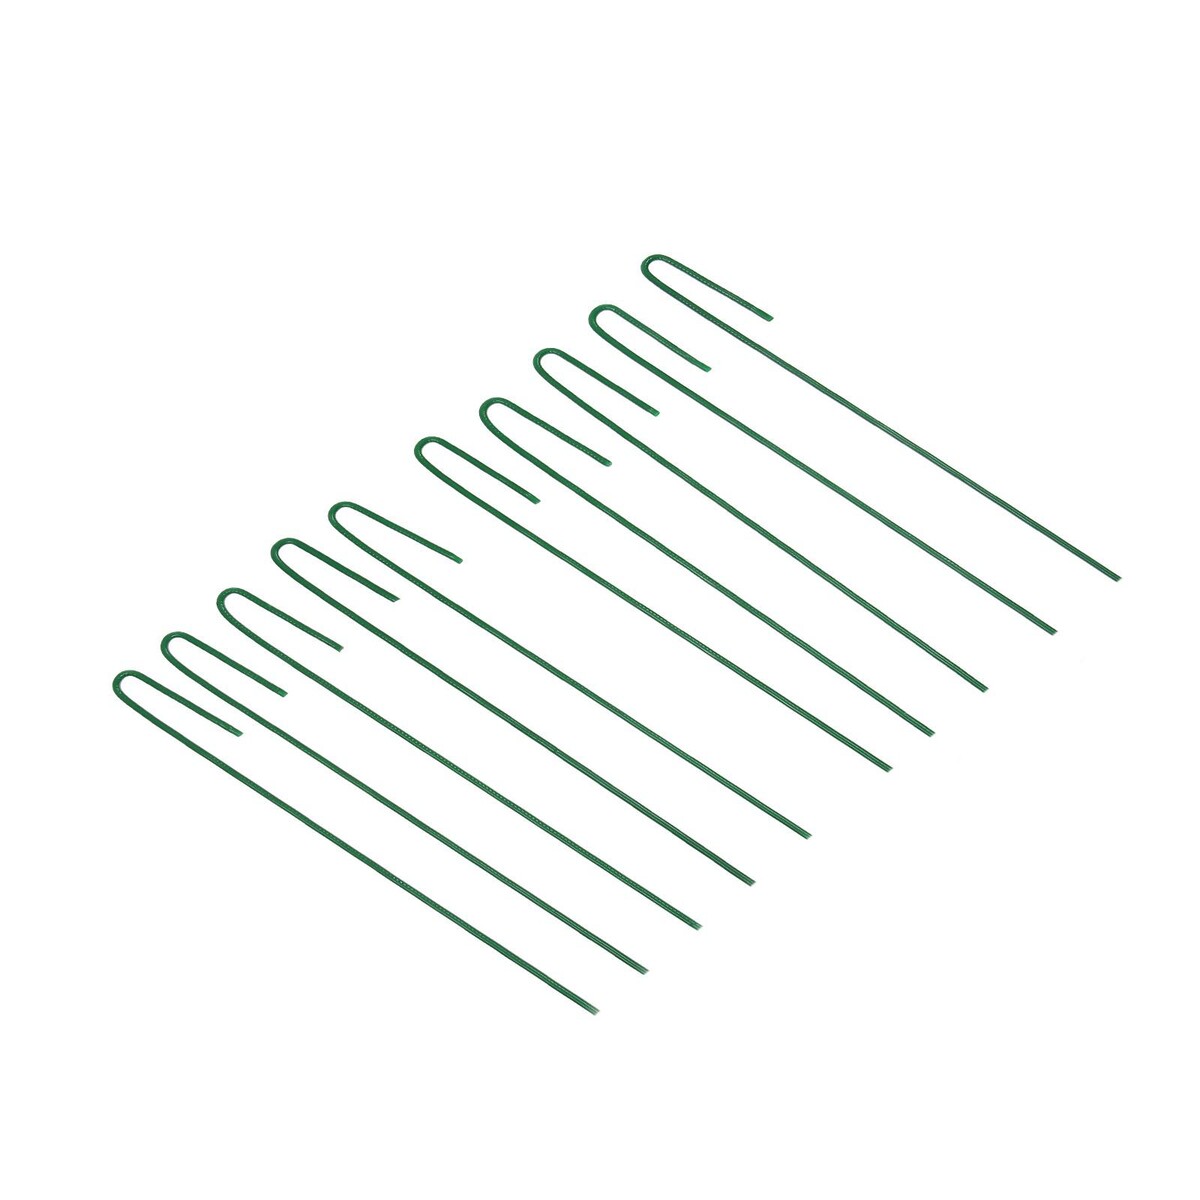 Колышек универсальный, h = 30 см, ножка d = 0.3 см, набор 10 шт., зеленый, greengo Greengo